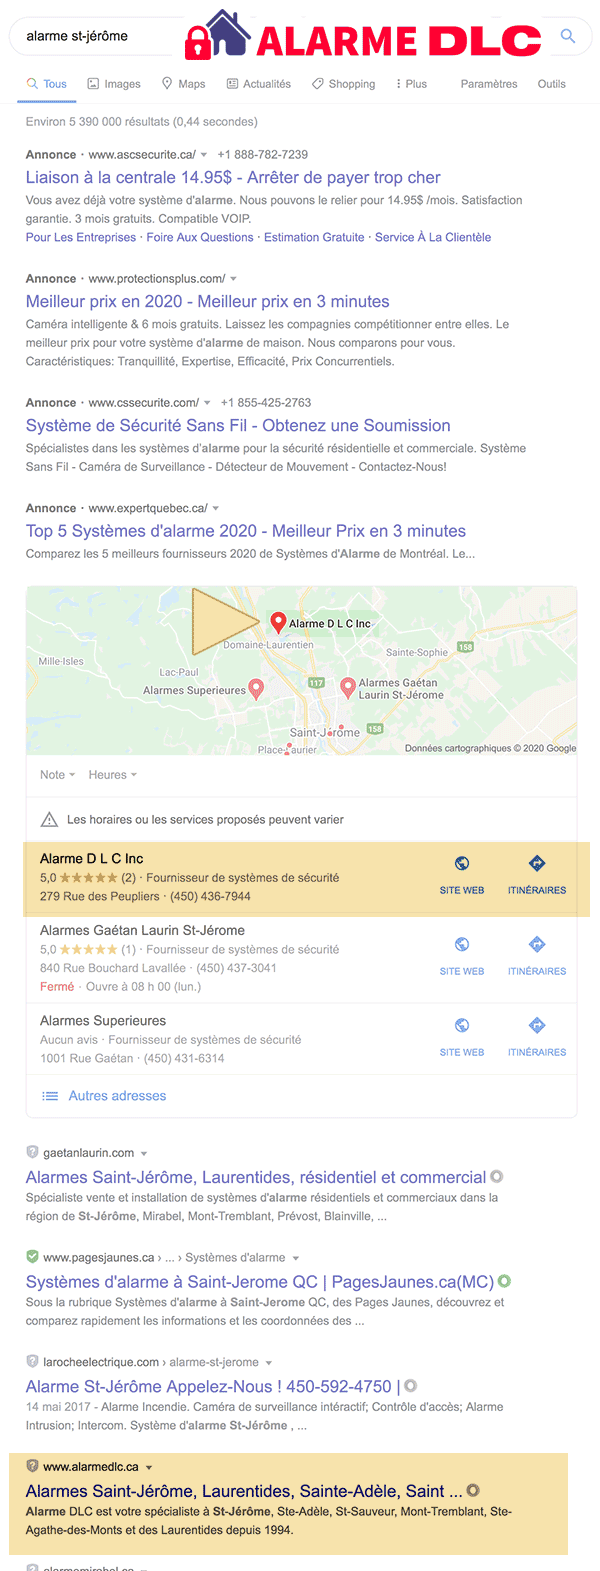 Alarme DLC, PREMIER dans le référencement local du classement Google Maps